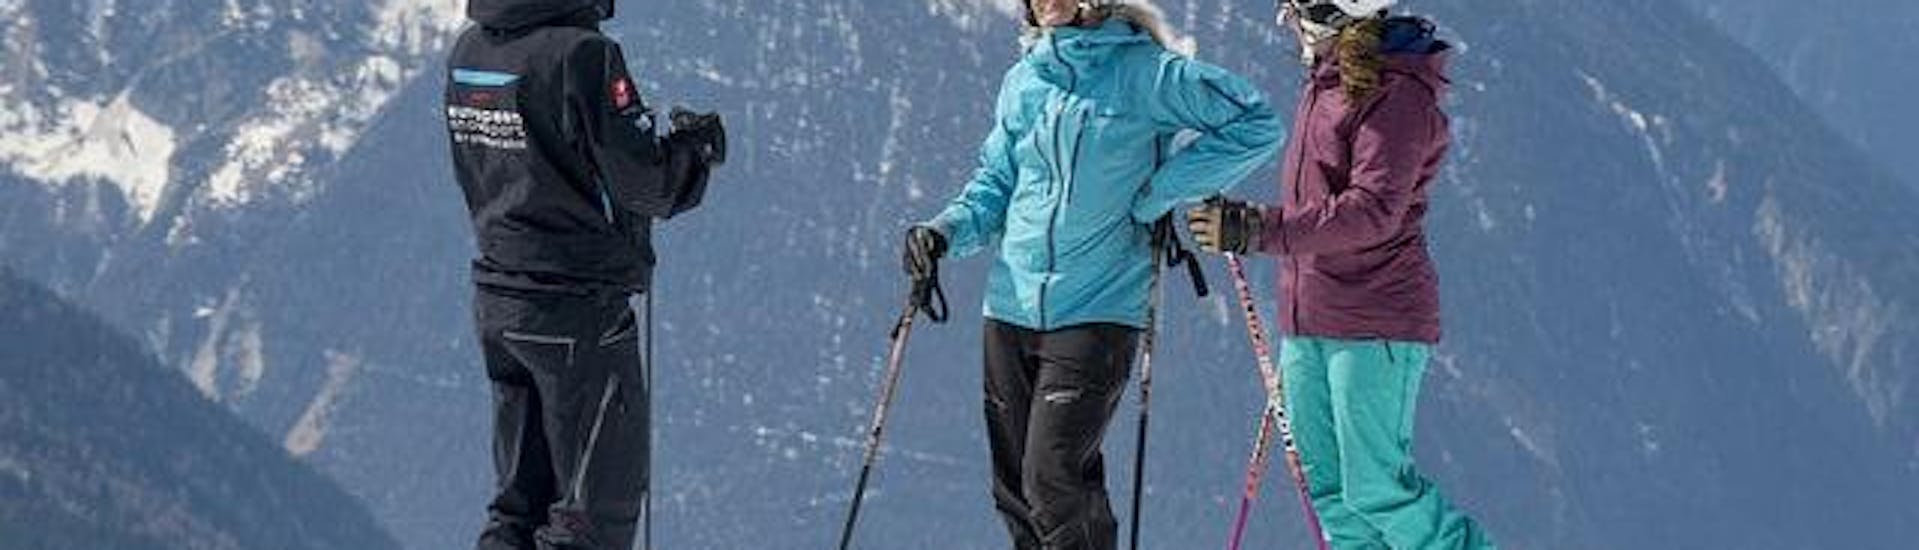 Privater Skikurs für Erwachsene aller Levels mit European Snowsport Verbier - Hero image